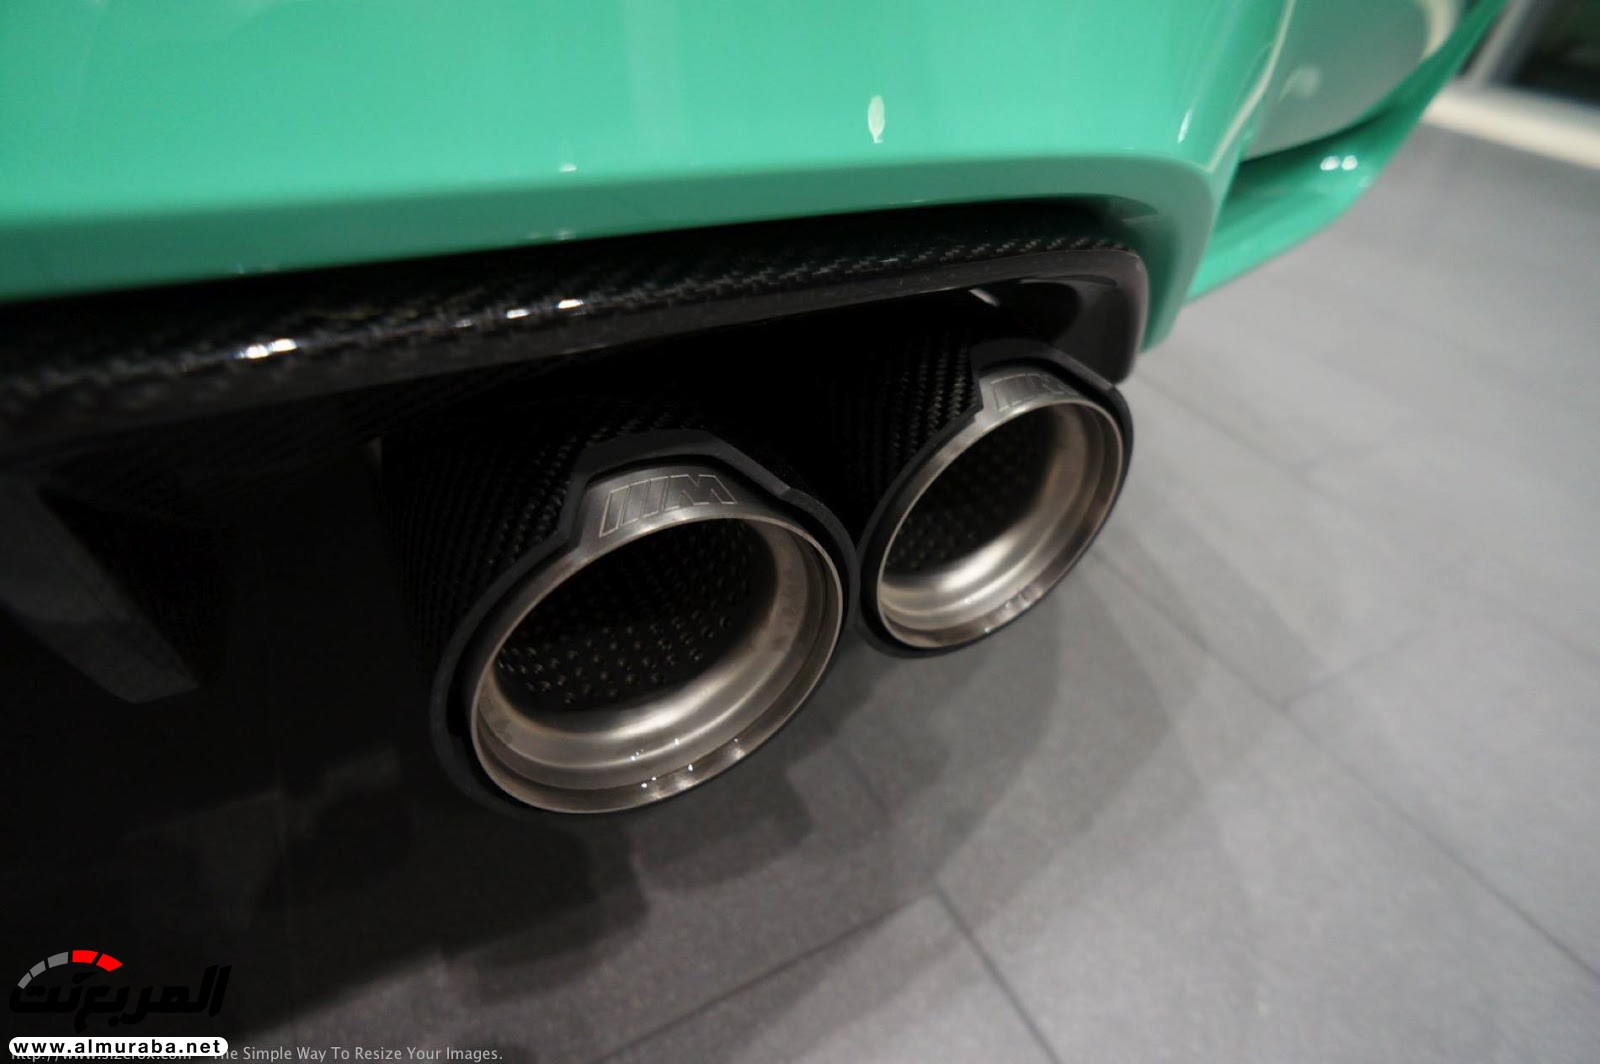 "بالصور" شاهد "بي إم دبليو" F80 M3 الخاصة بطلاء النعناع الأخضر BMW 107